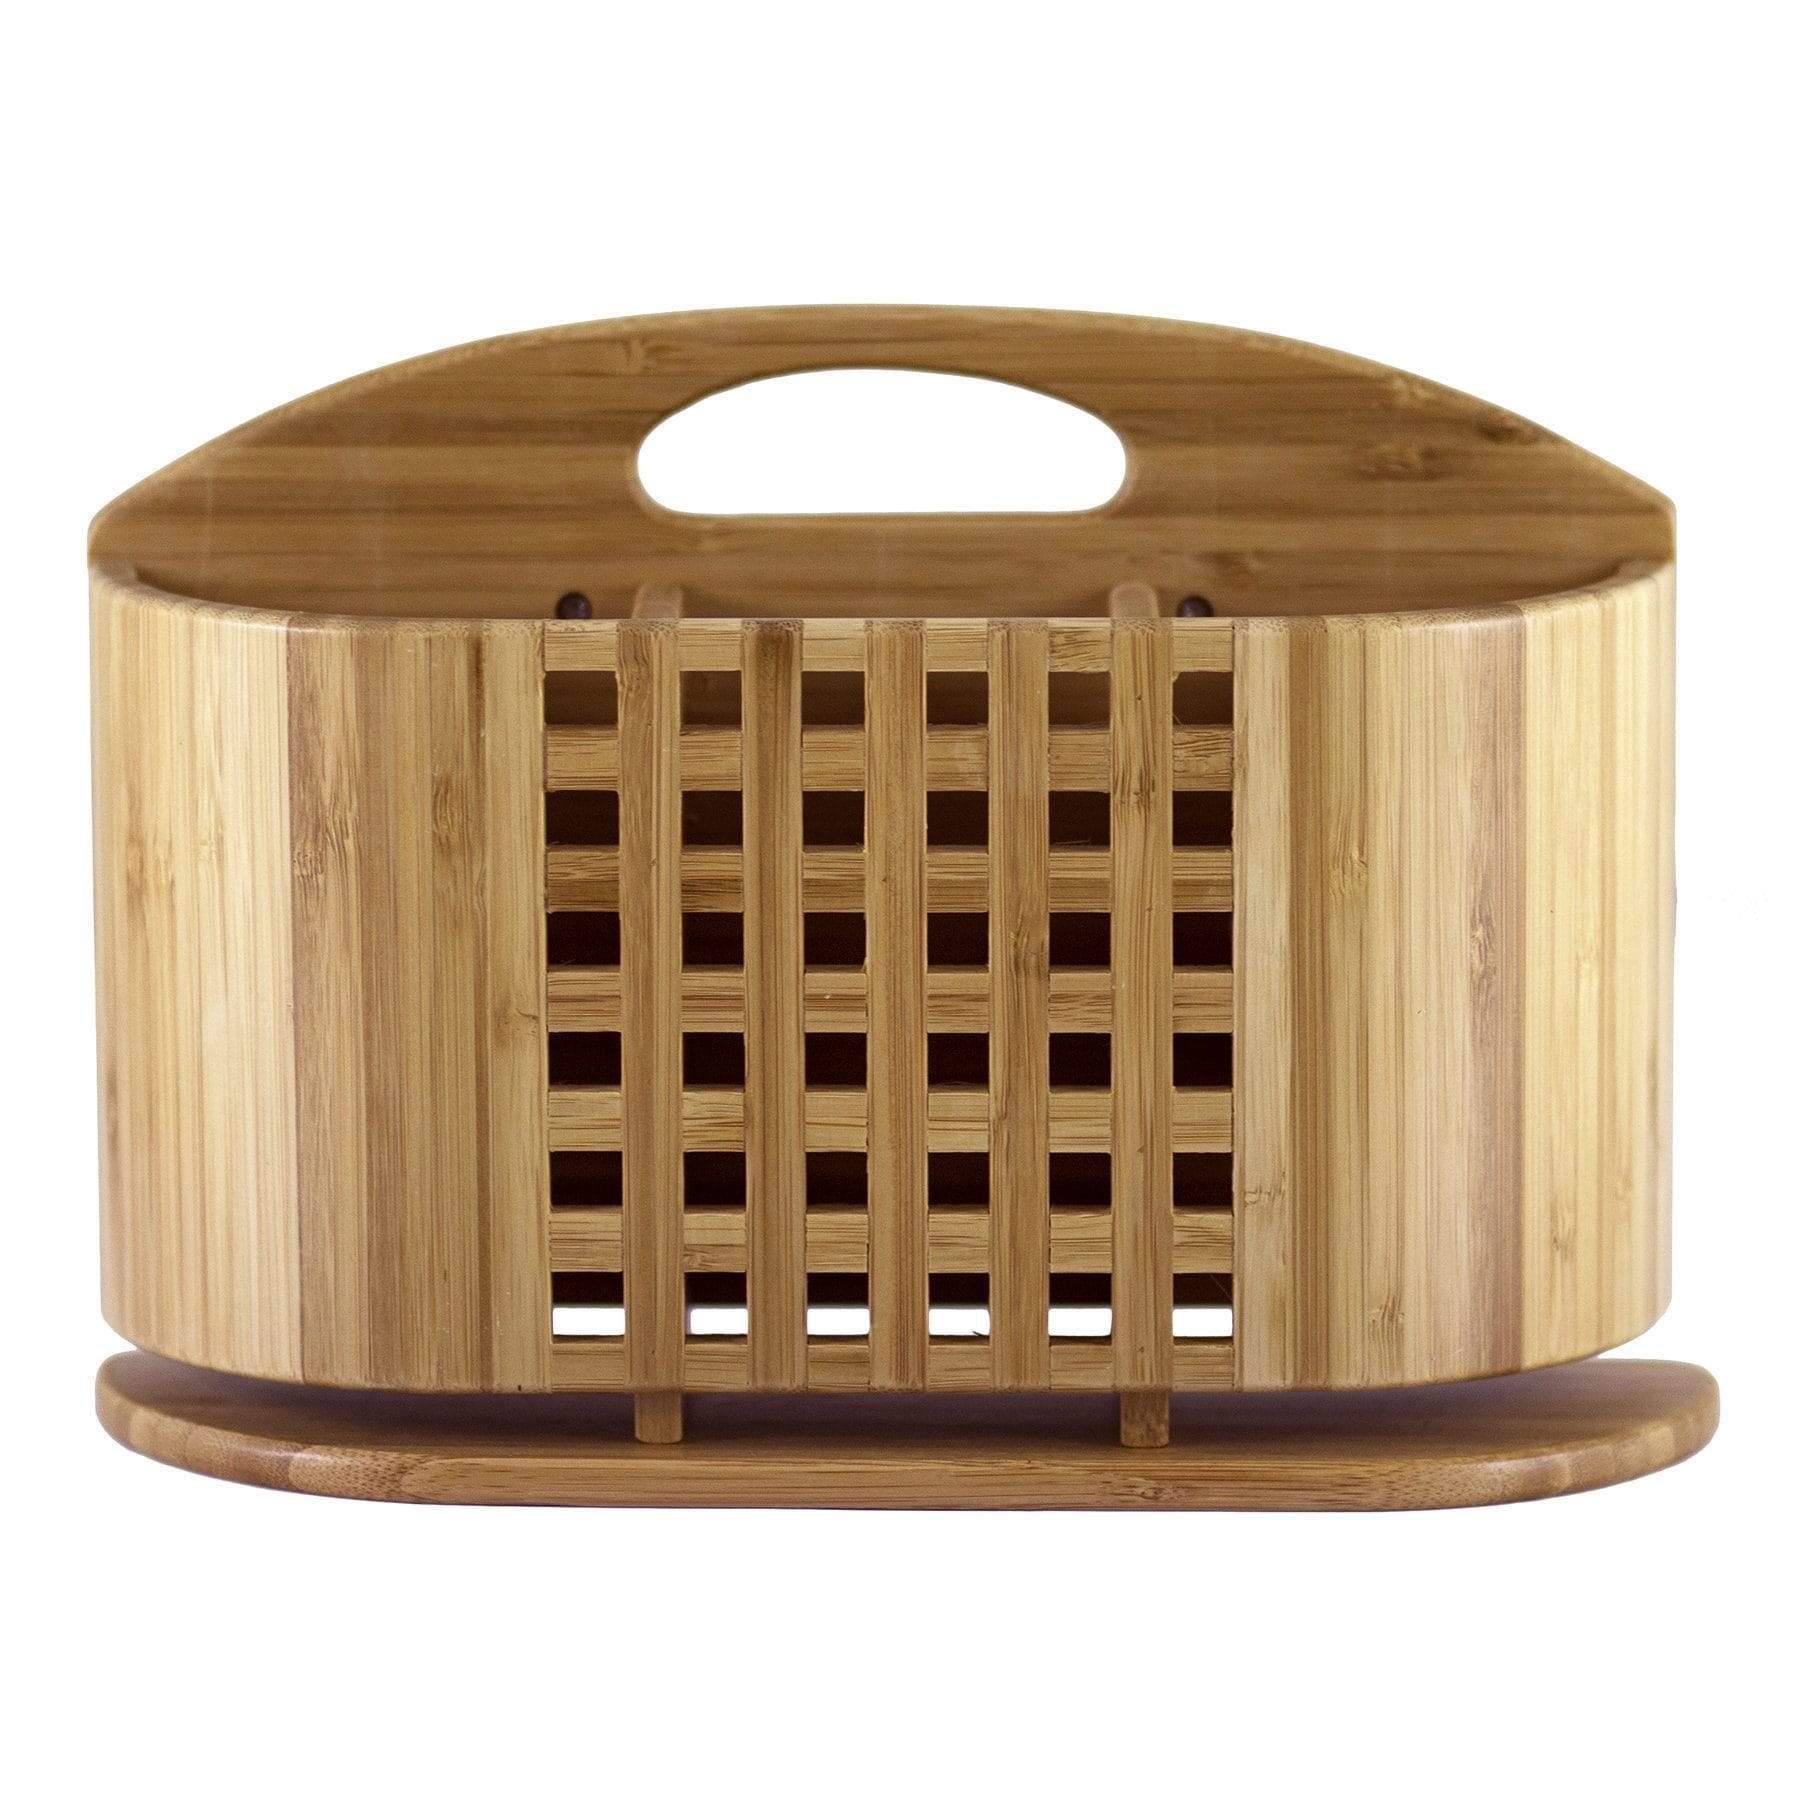 Totally Bamboo Eco Dish Rack Utensil Holder